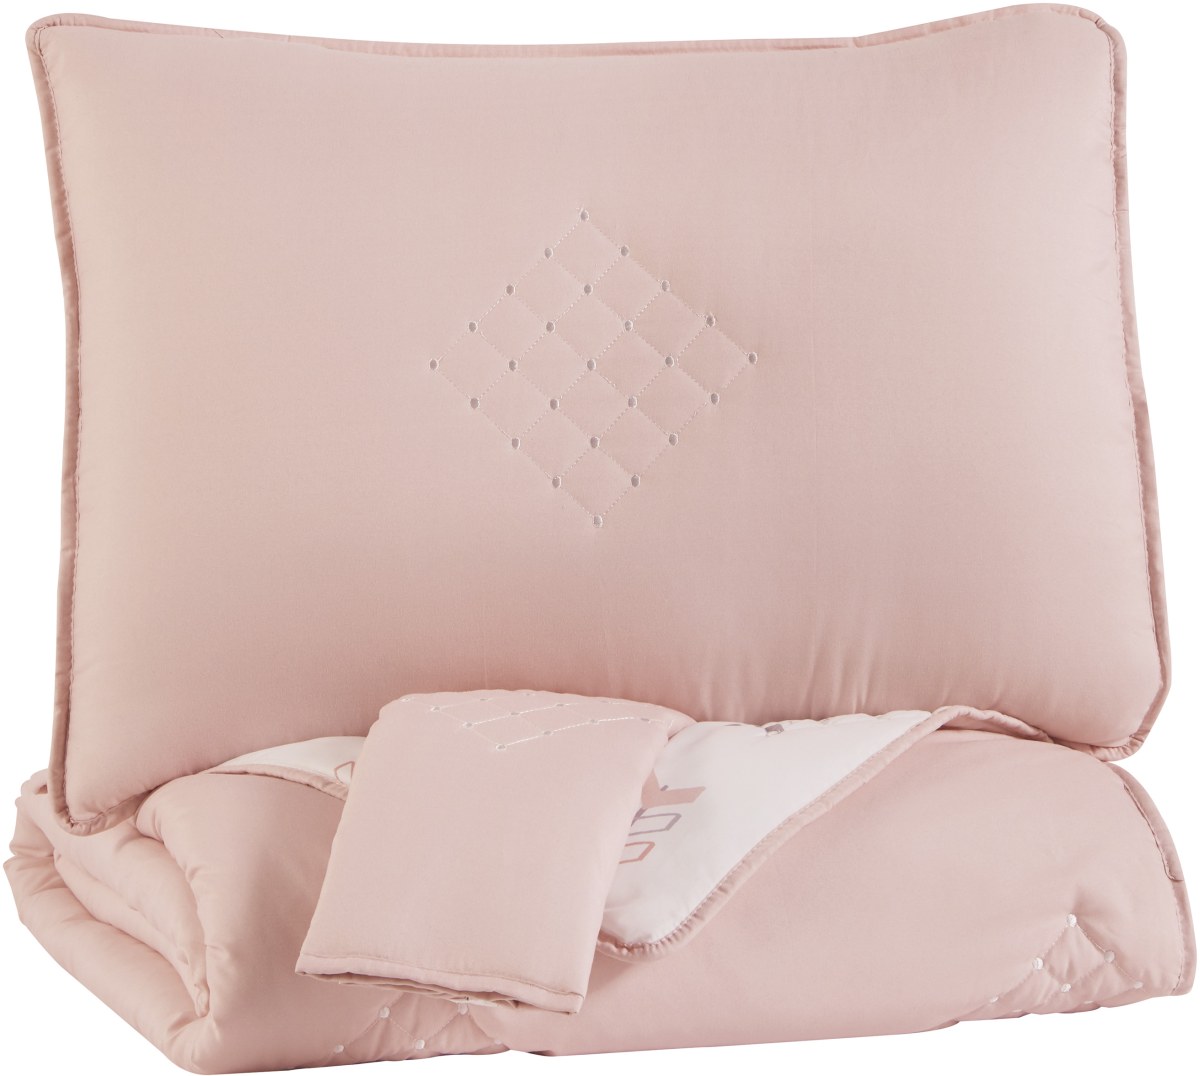 Signature Design by Ashley® Lexann Pink/White/Gray Full Comforter Set